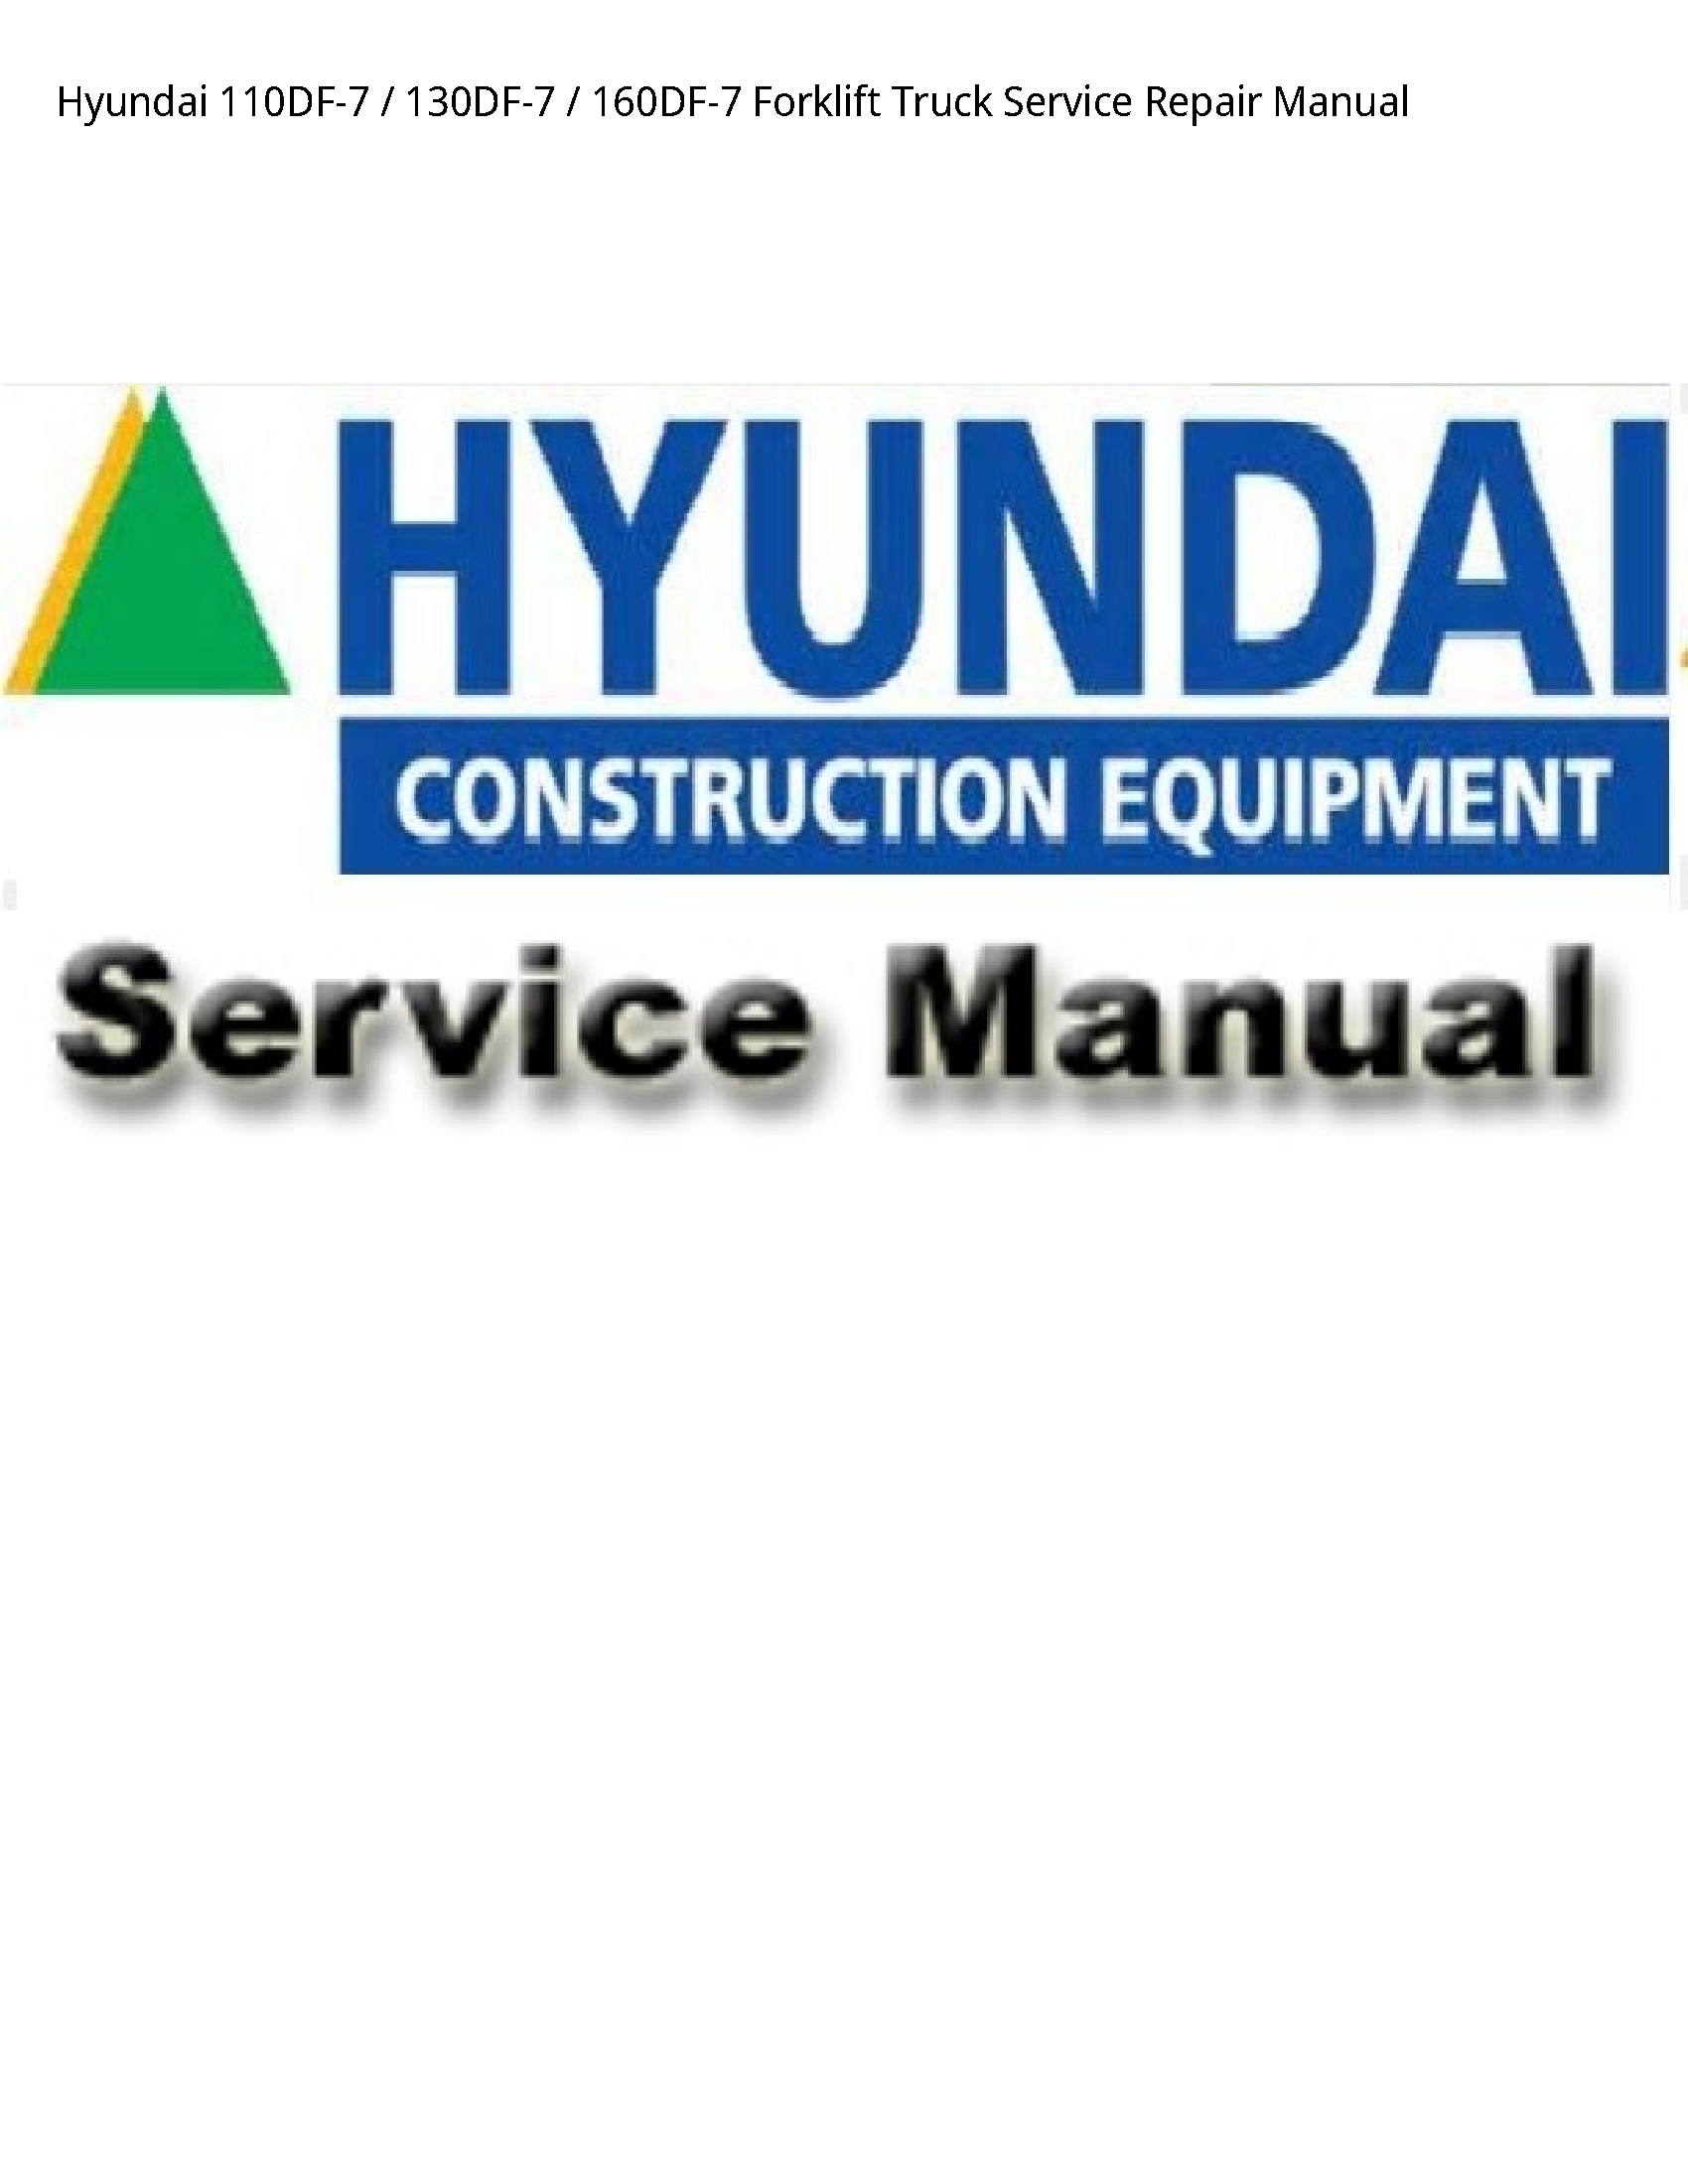 Hyundai 110DF-7 Forklift Truck manual